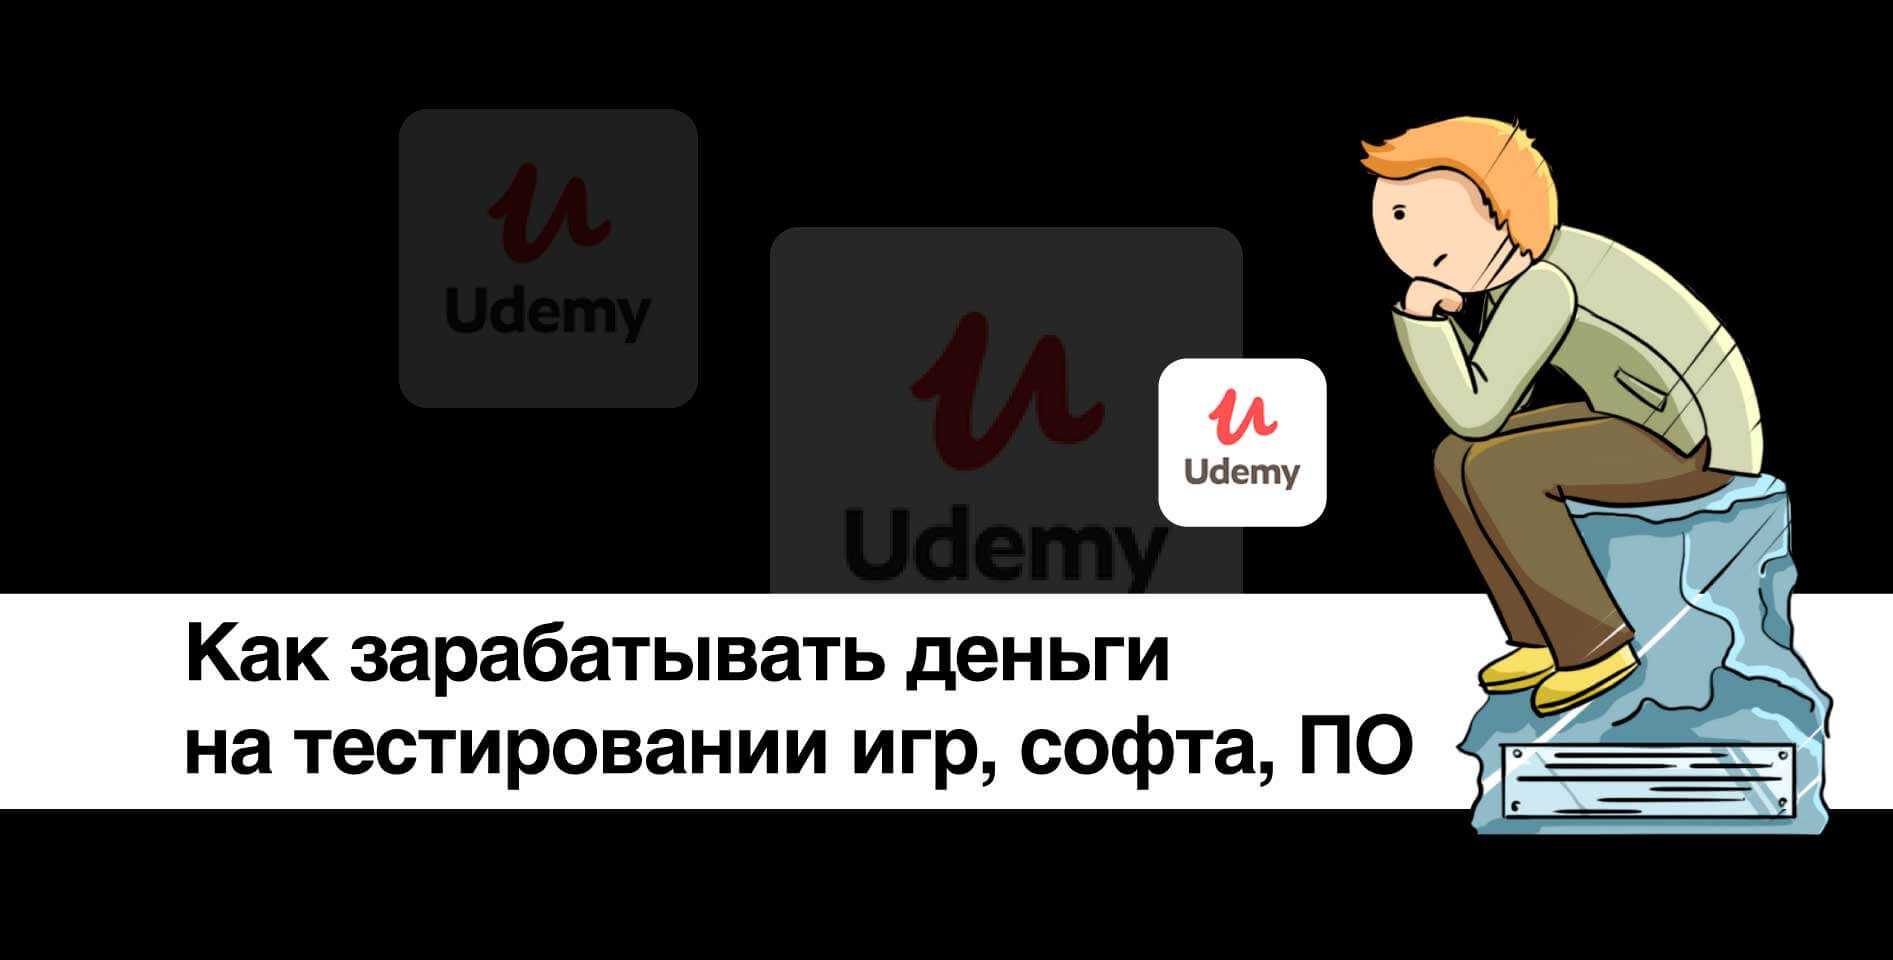 Udemy — Как зарабатывать деньги на тестировании игр, софта, ПО